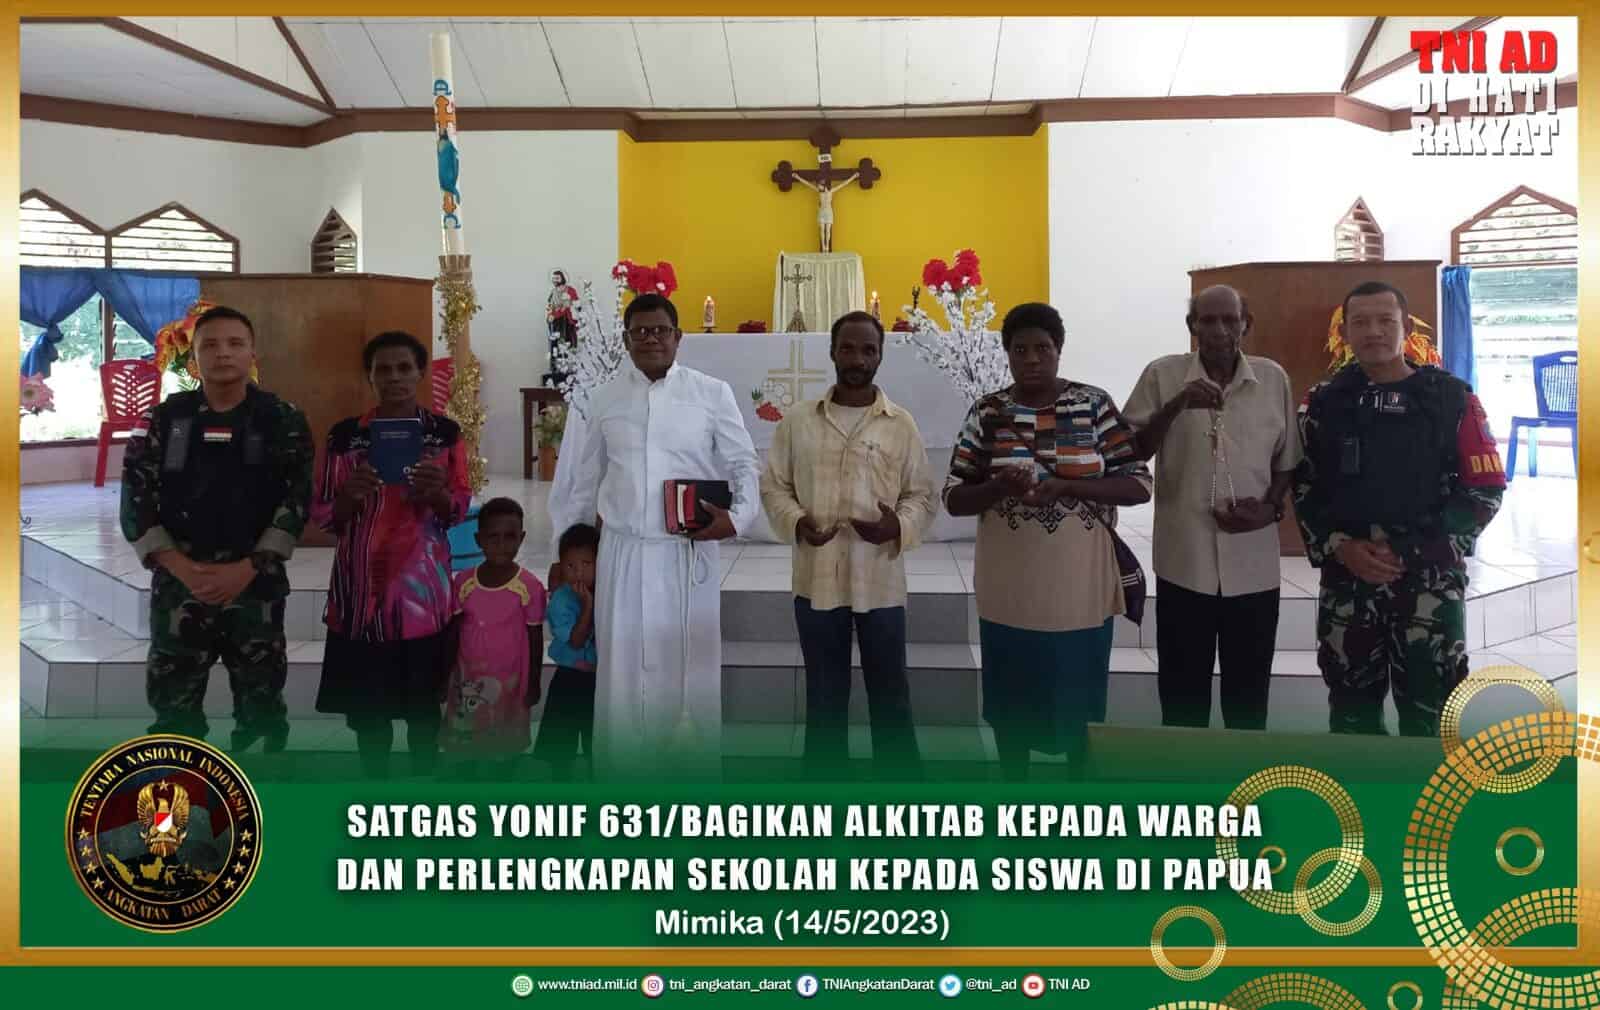 Cinta Kasih Satgas TNI Bagikan Alkitab kepada Warga dan Perlengkapan Sekolah Kepada Siswa di Papua